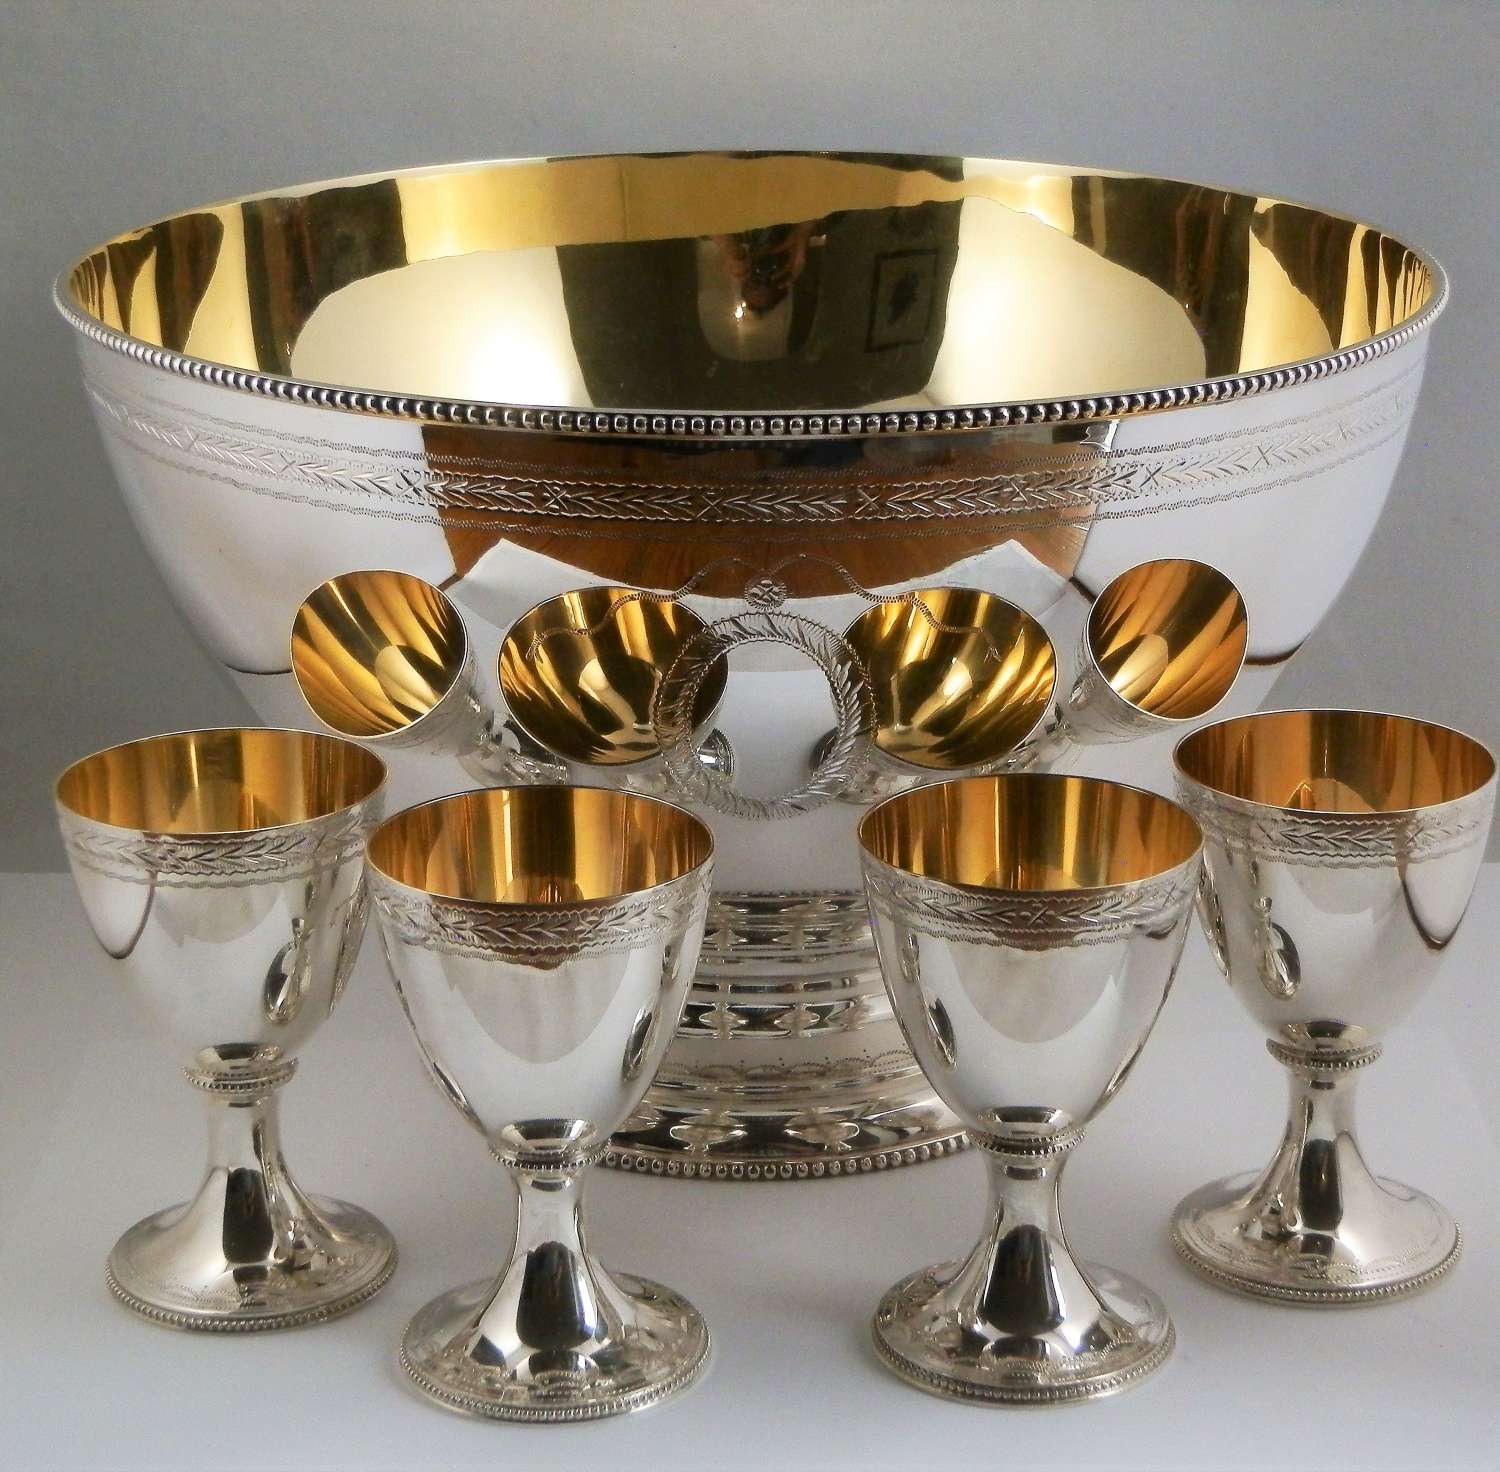 Elizabeth II silver punch bowl, ladle and 12 goblets, C.J.Vander 1973